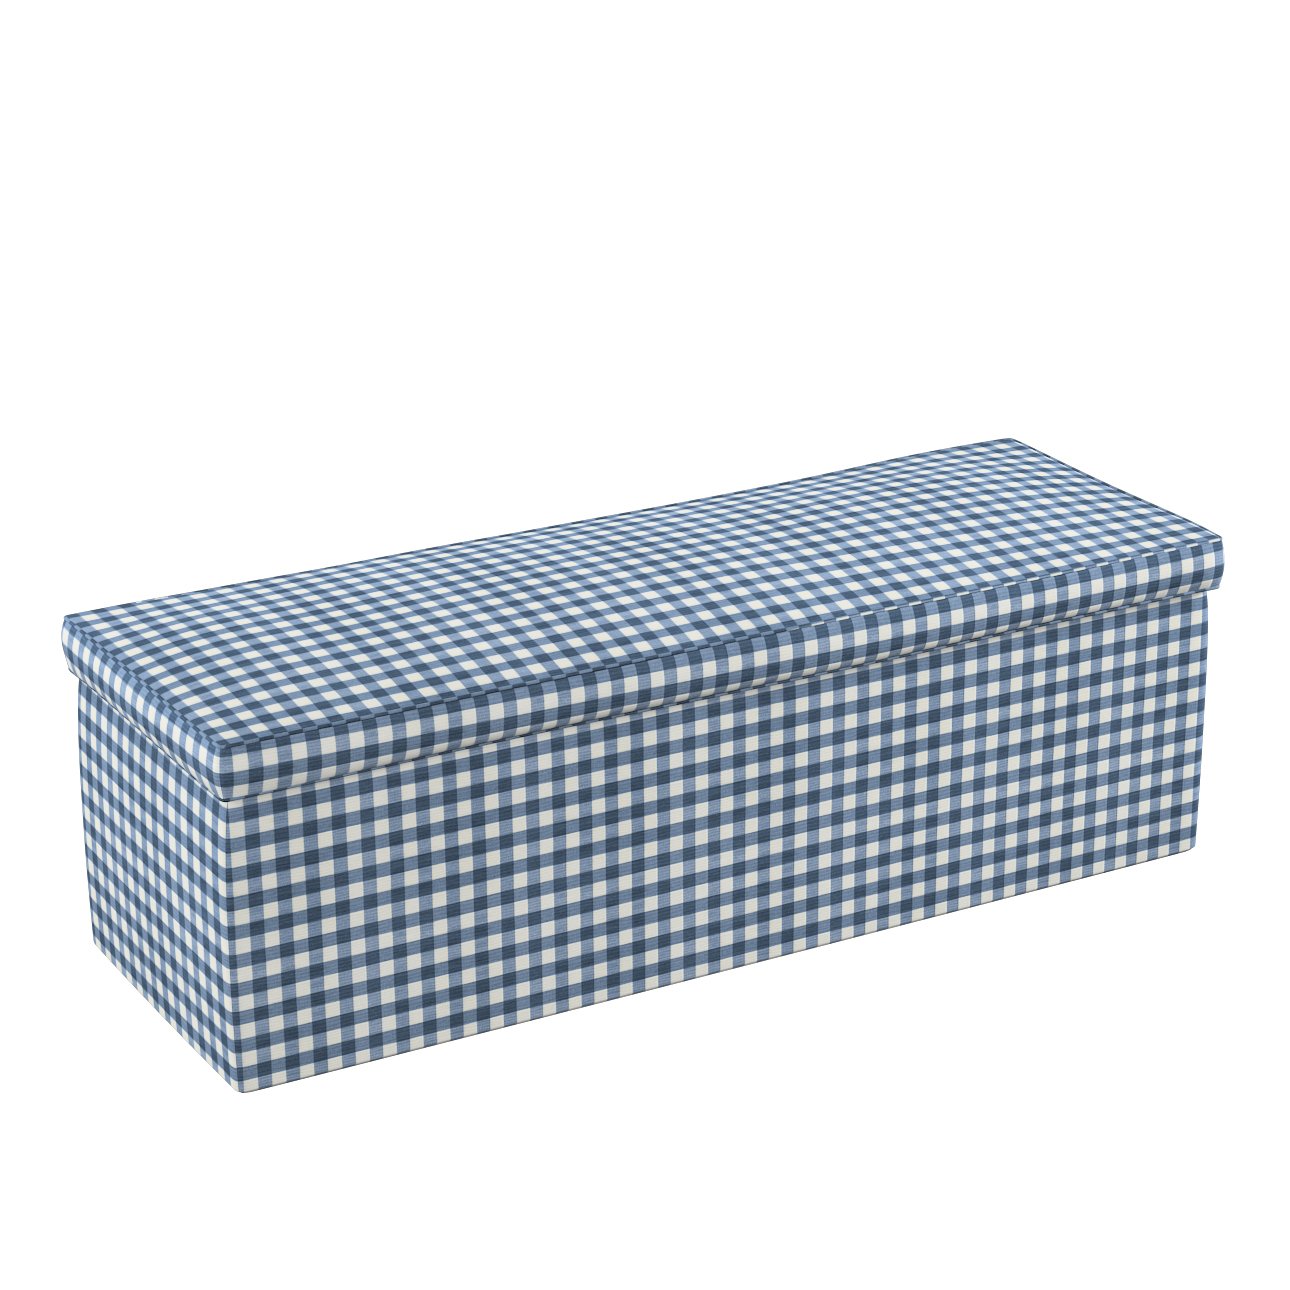 Dekoria Čalouněná skříň, tmavě modrá - bílá střední kostka, 120 x 40 x 40 cm, Quadro, 136-01